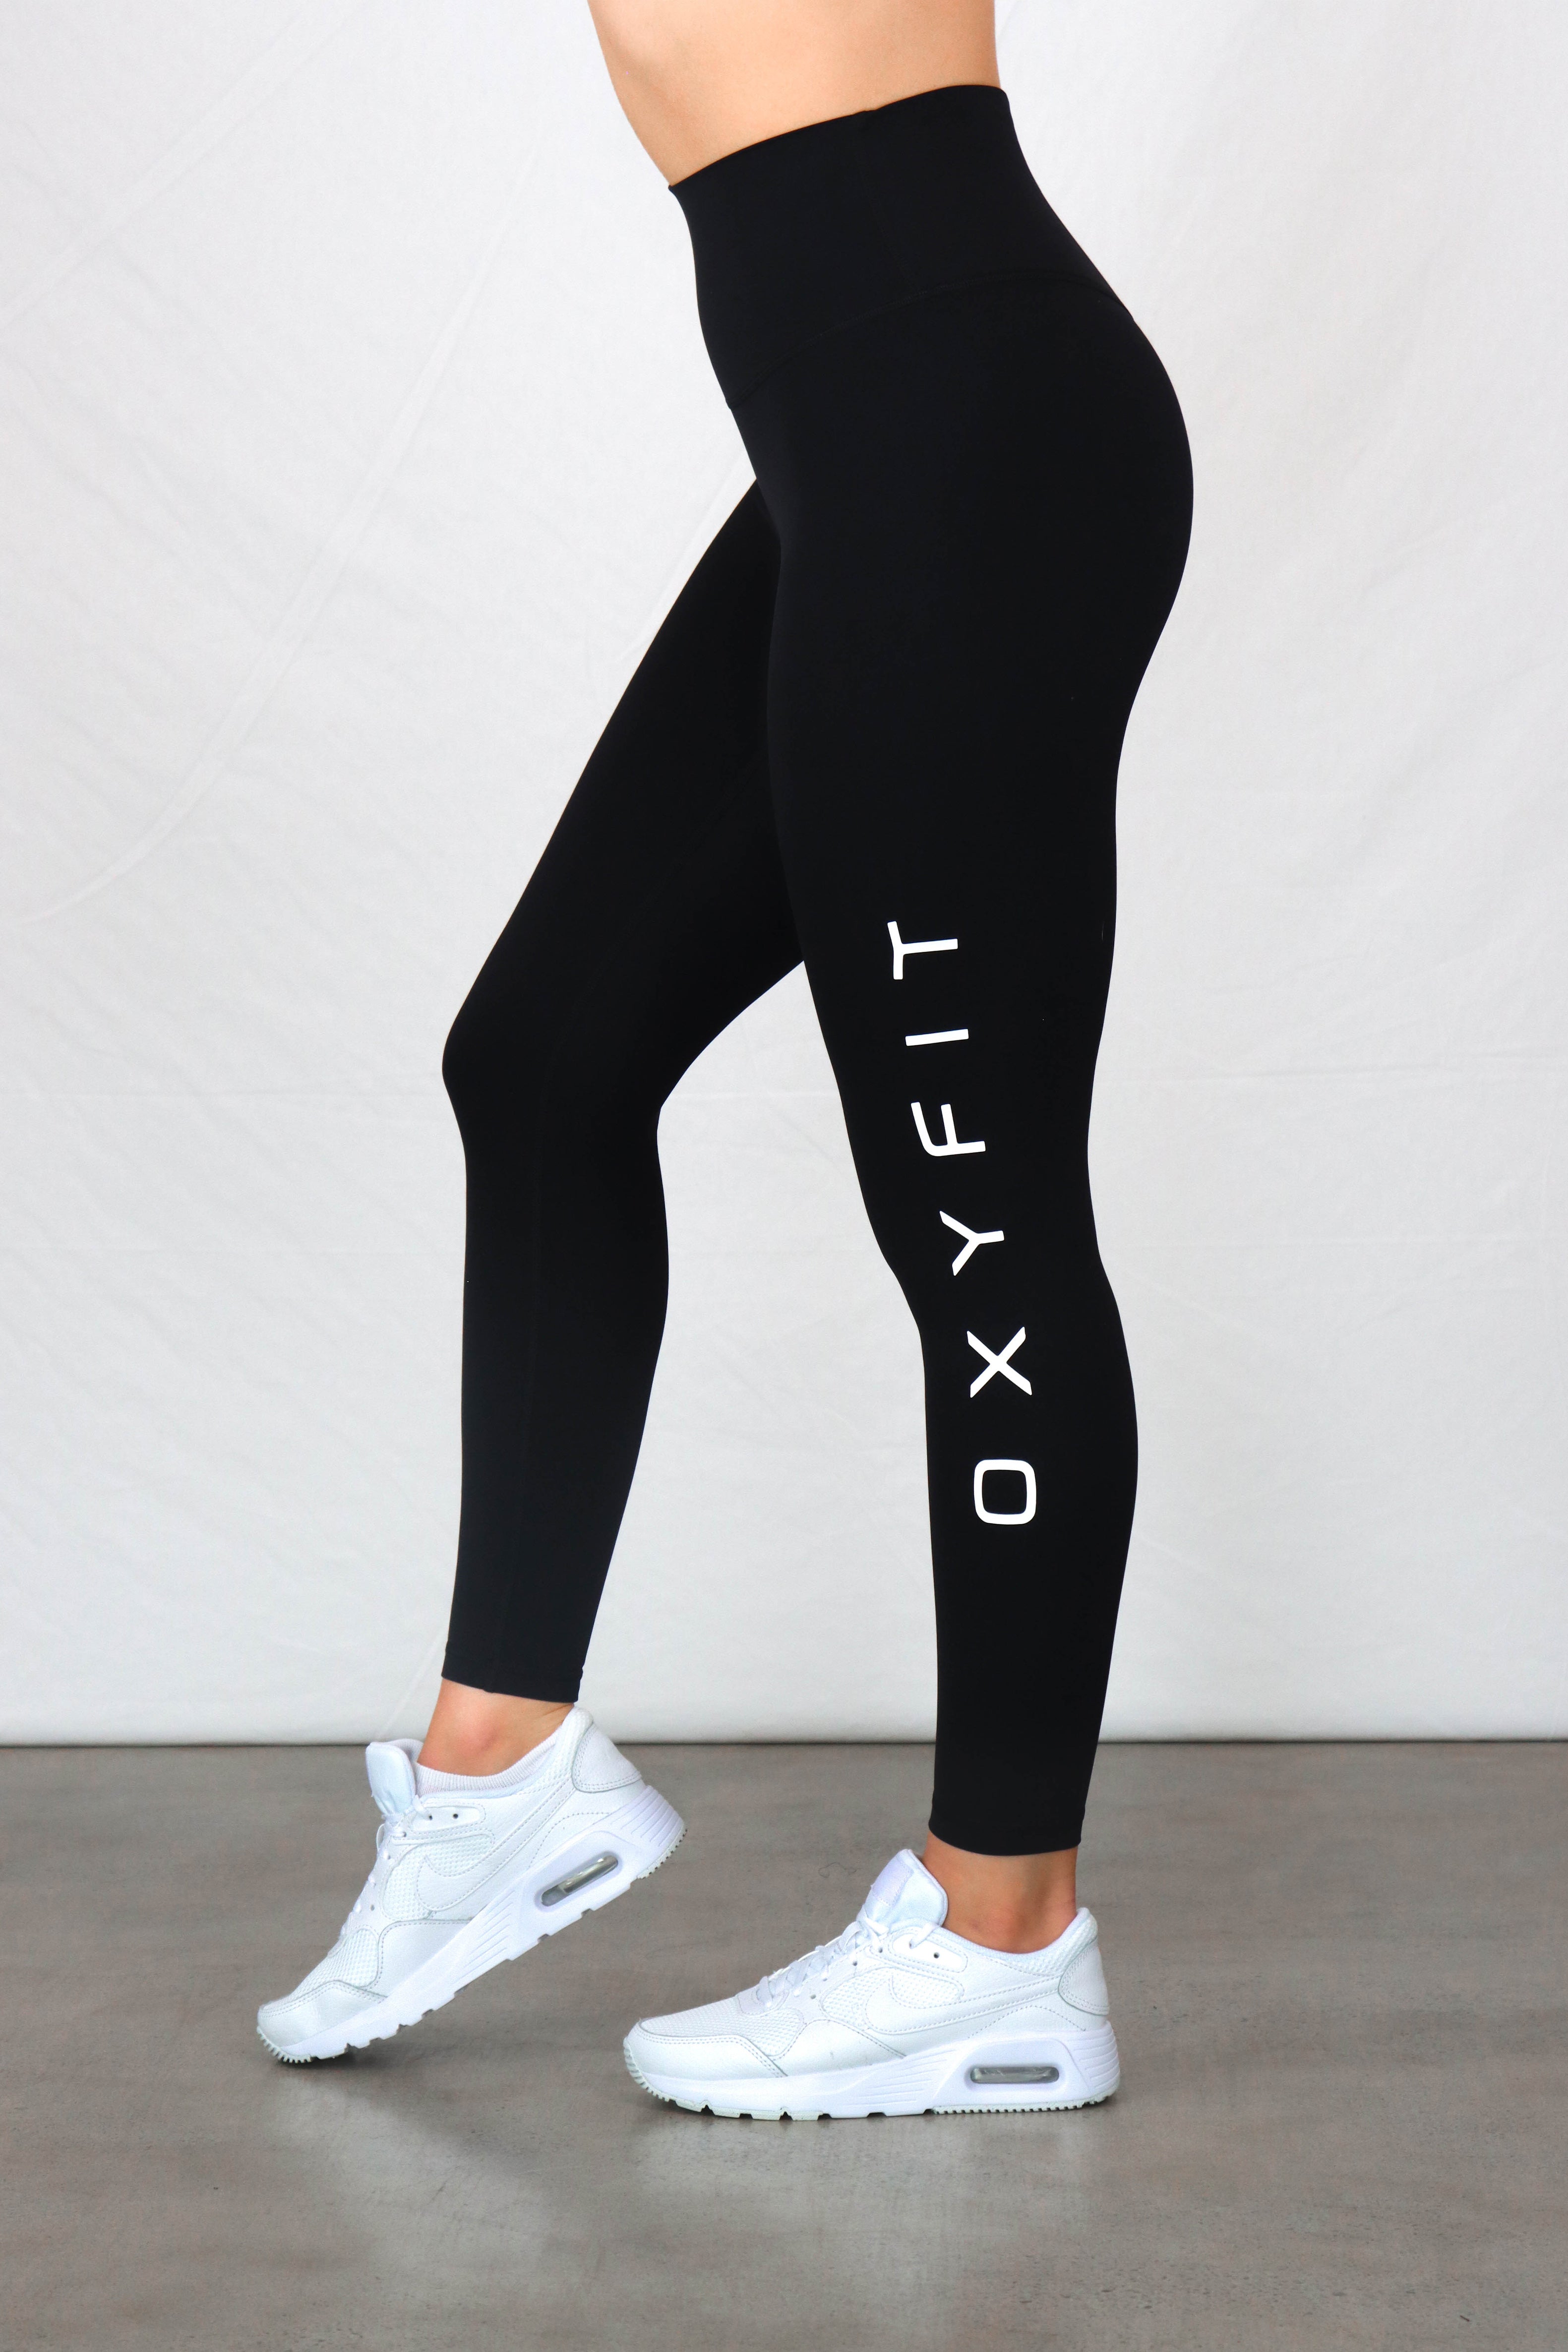 OXYFIT Leggings 14441 Soft BK- Sexy Workout Leggings Cutout Mesh Panels